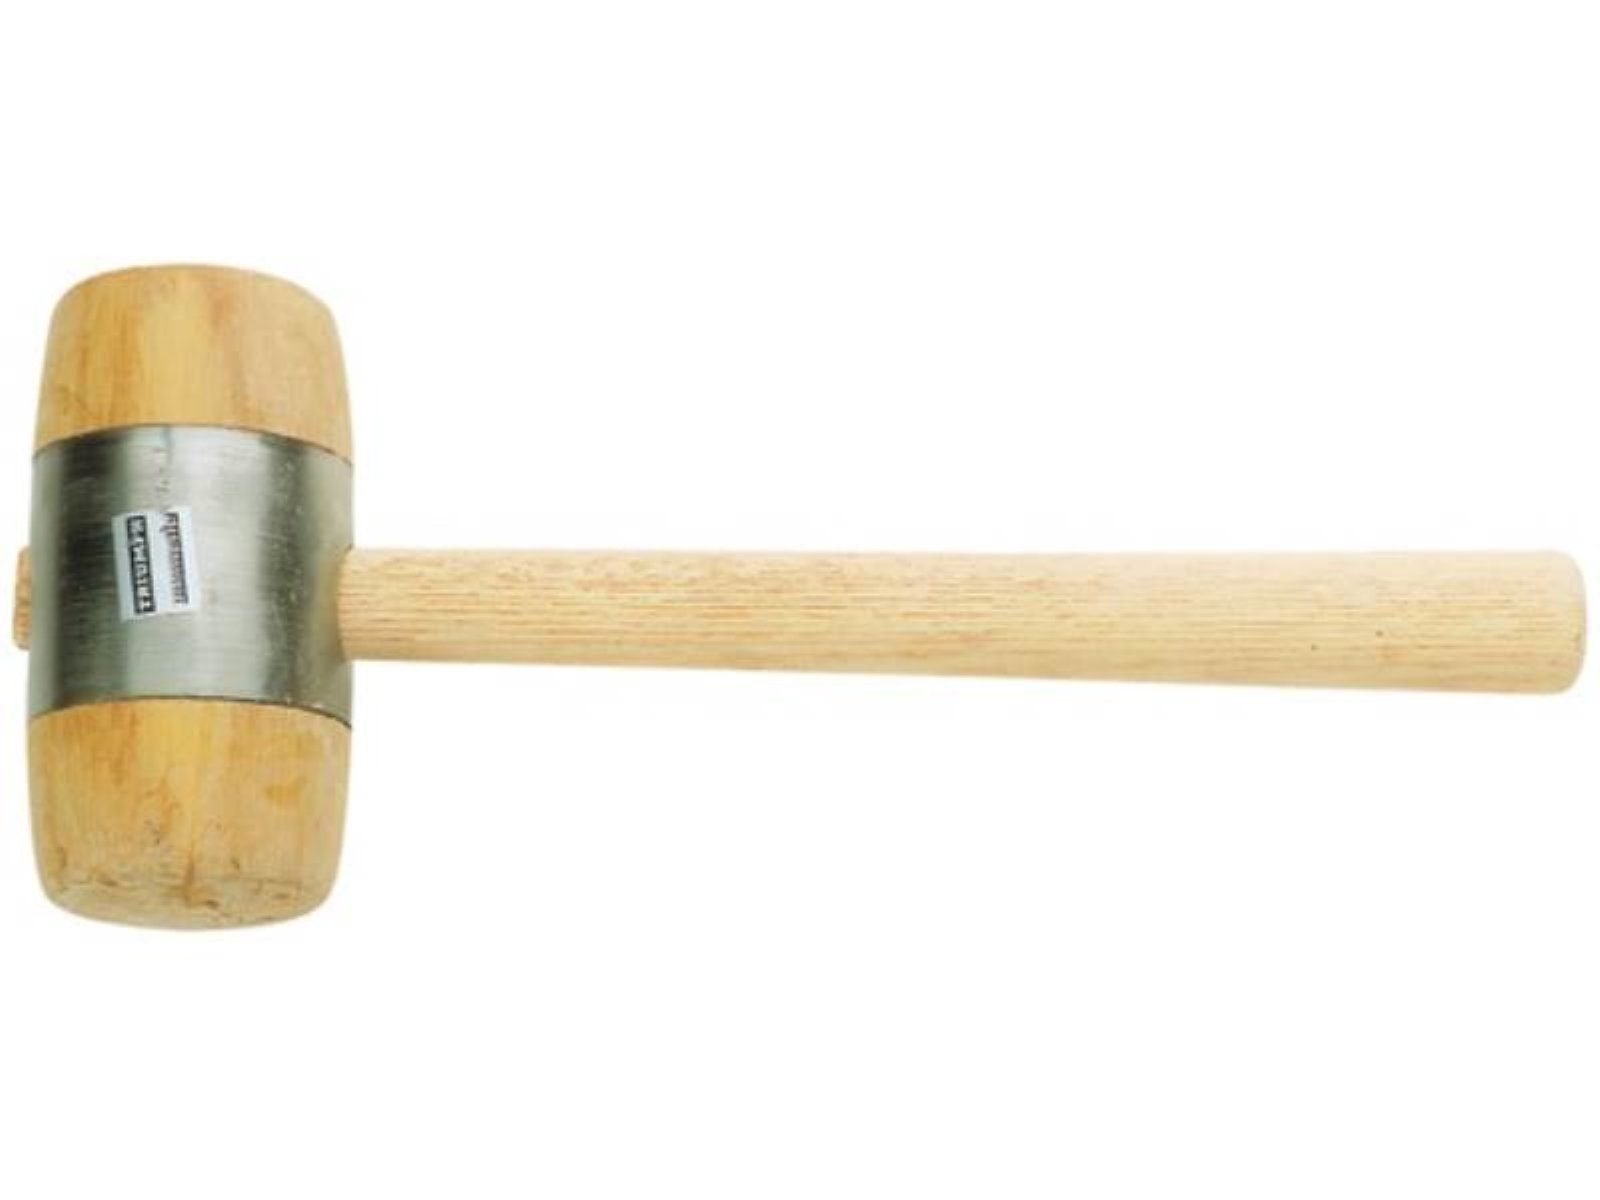 Holzhammer aus Weißbuche PROMAT Holzhammer 60mm 340g Hammerkörper Weißbuchenh Kopf-Ø